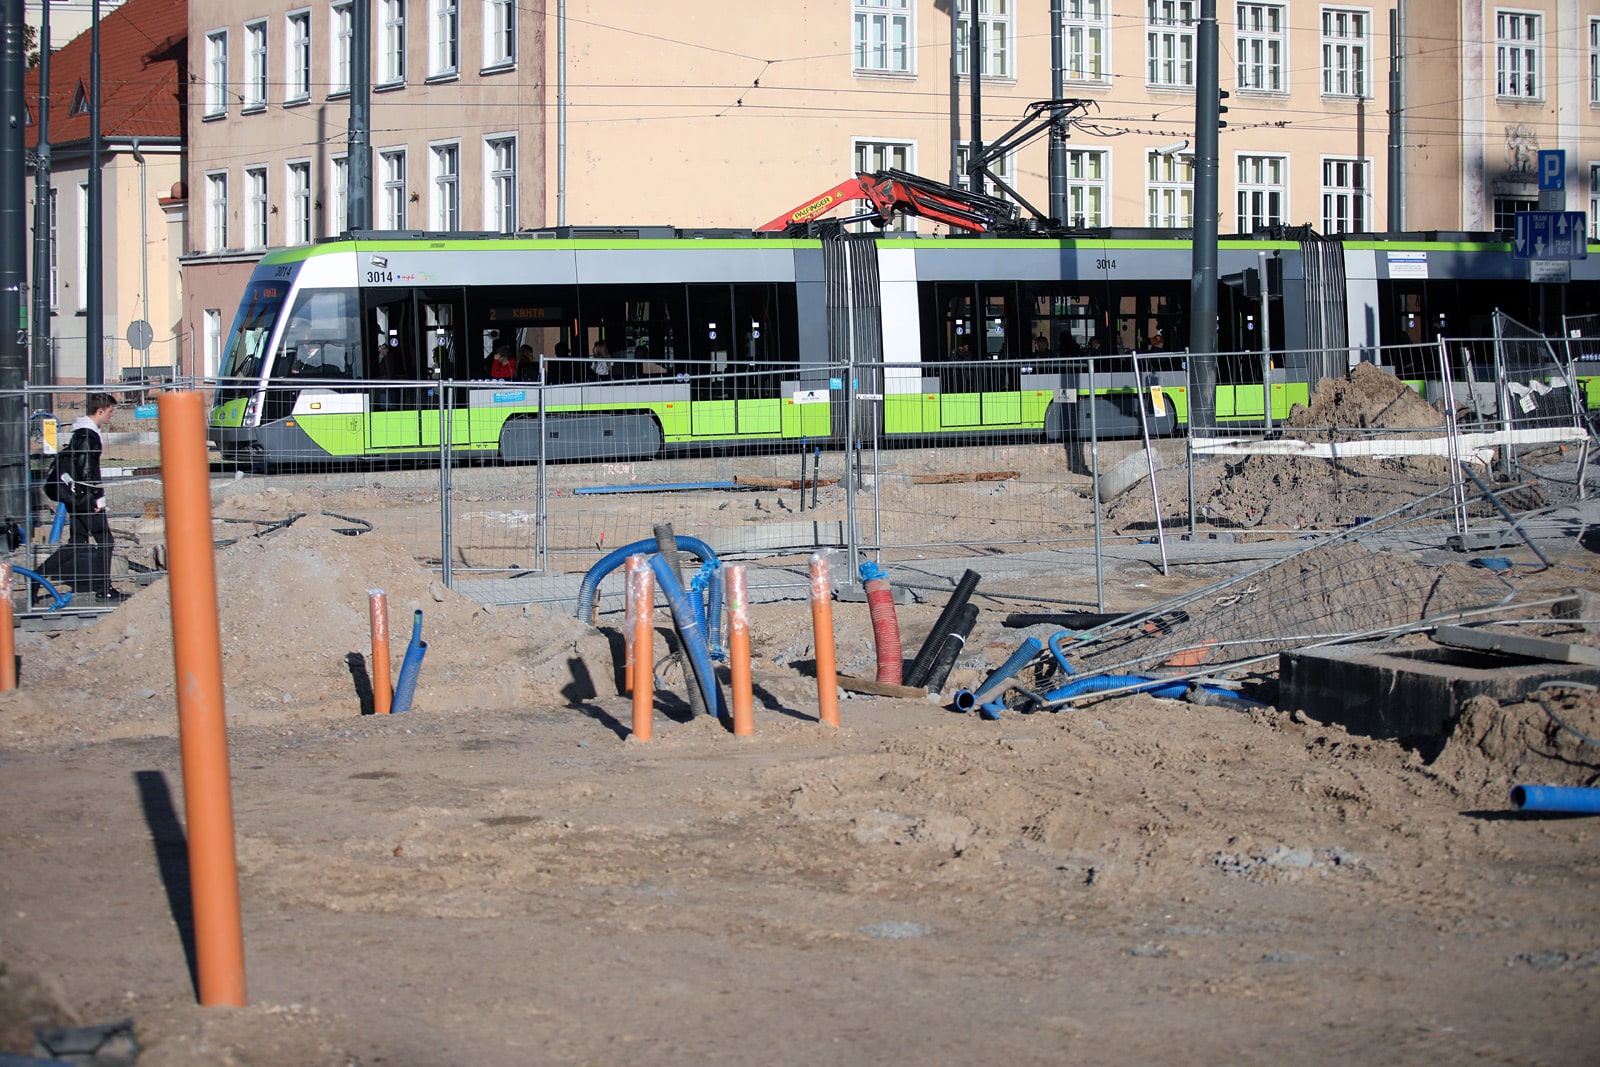 Kontrakt na budowę nowej nitki tramwajowej może być wyższy o 51,3 mln zł tramwaje Olsztyn, Wiadomości, zemptypost, zPAP